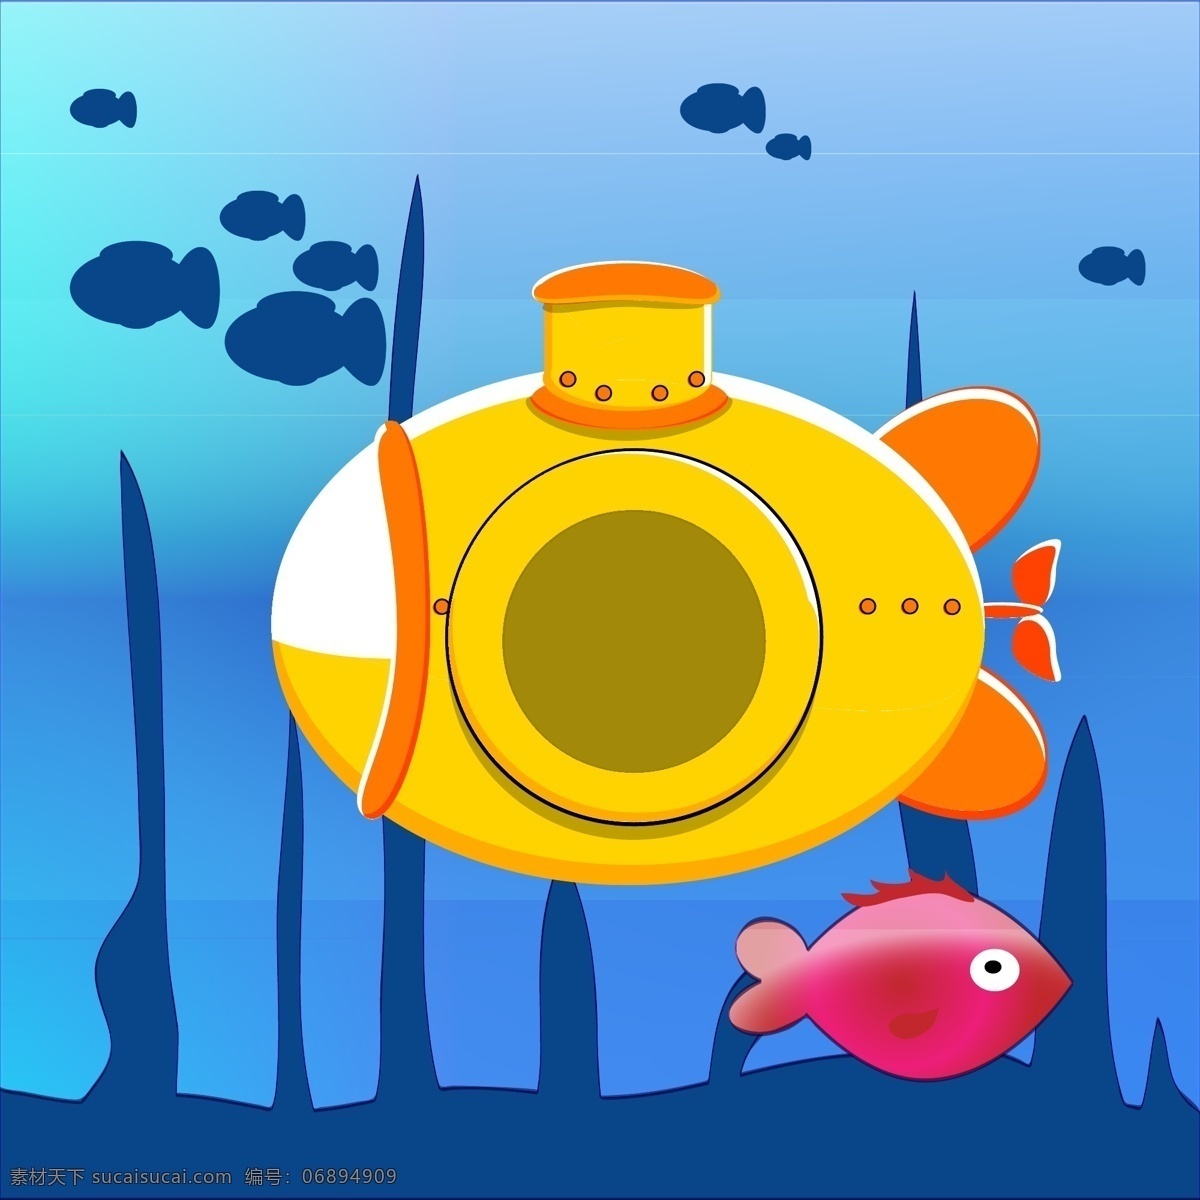 卡通海底世界 卡通鱼类 海底世界 鱼 潜水艇 海底 海洋